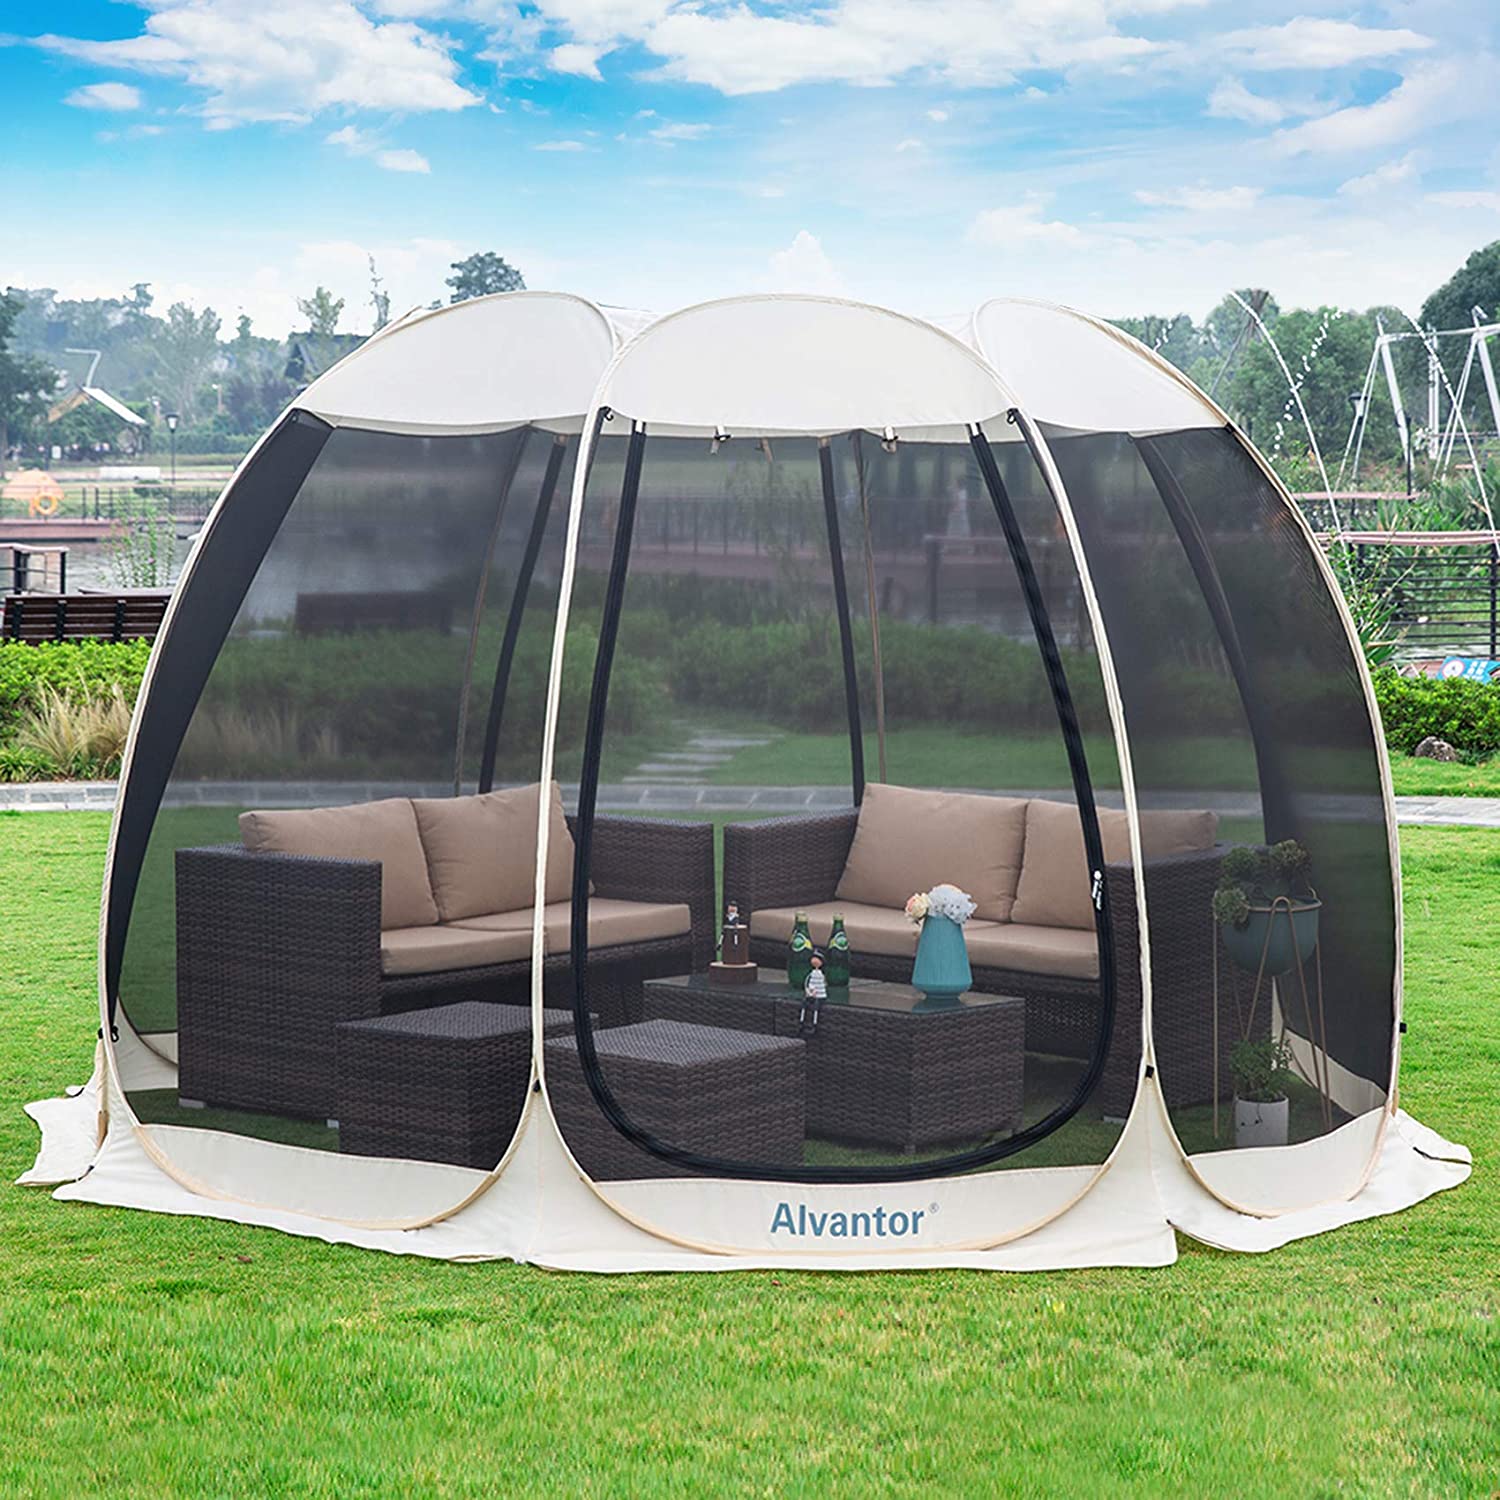 Alvantor Screen House Room Outdoor Camping Tent